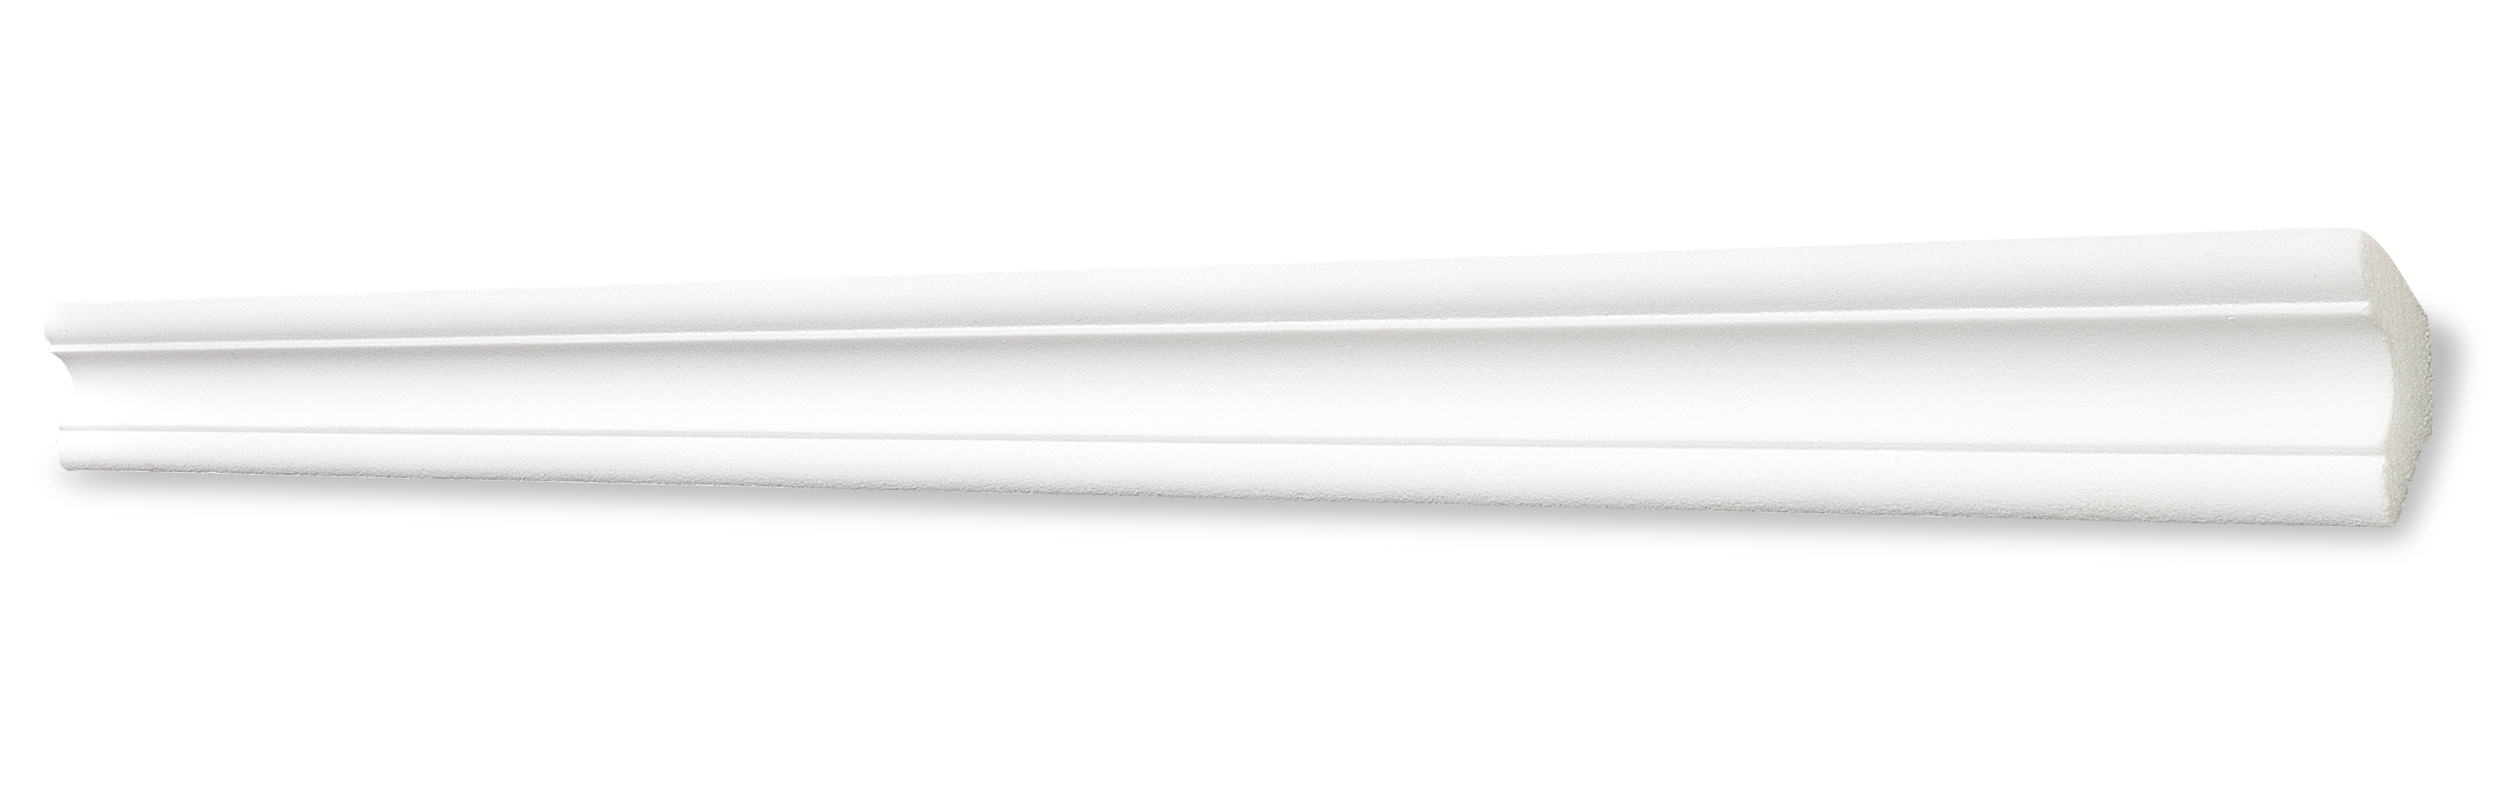 DECOSA Moulure A40 - polystyrène - blanc - 30 x 30 mm - longueur 2 m